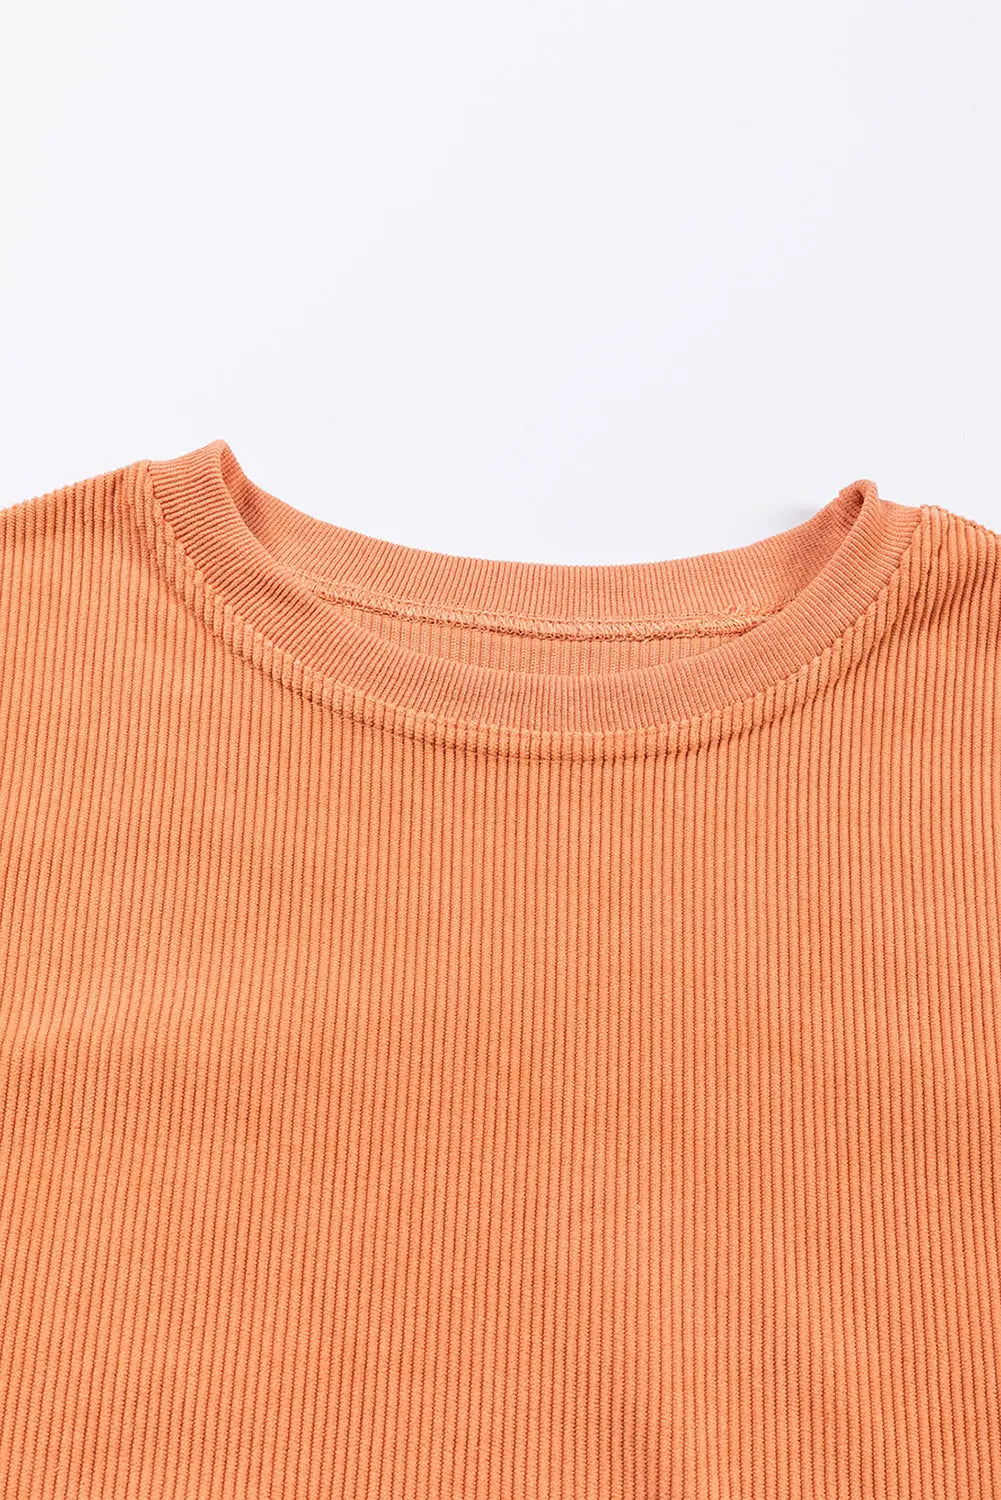 Orange leopard pumpkin graphic corded sweatshirt